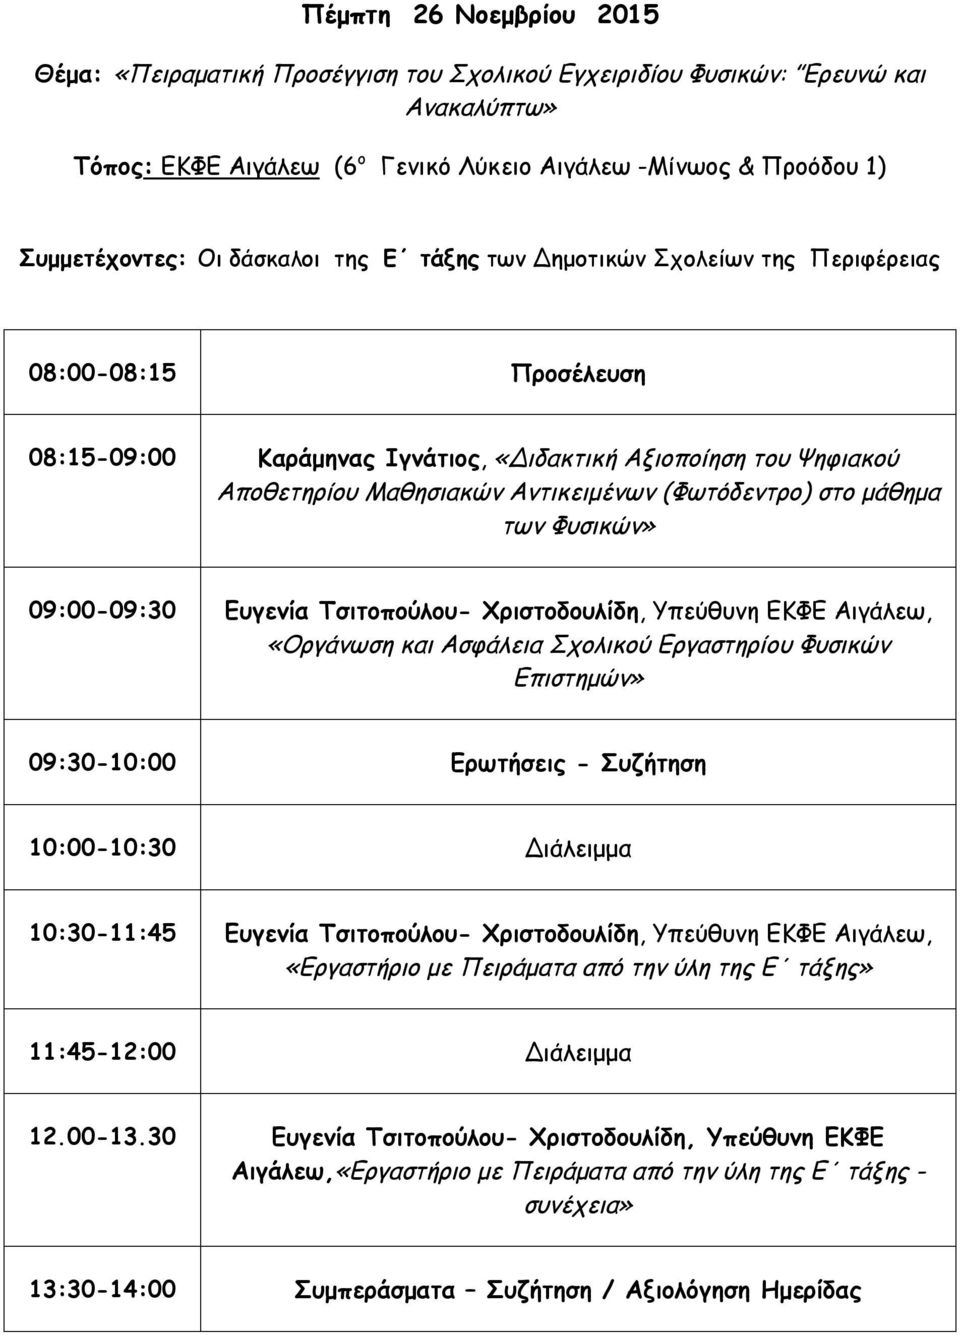 09:00-09:30 Ευγενία Τσιτοπούλου- Χριστοδουλίδη, Υπεύθυνη ΕΚΦΕ Αιγάλεω, «Οργάνωση και Ασφάλεια Σχολικού Εργαστηρίου Φυσικών Επιστημών» 09:30-10:00 Ερωτήσεις - Συζήτηση 10:30-11:45 Ευγενία Τσιτοπούλου-